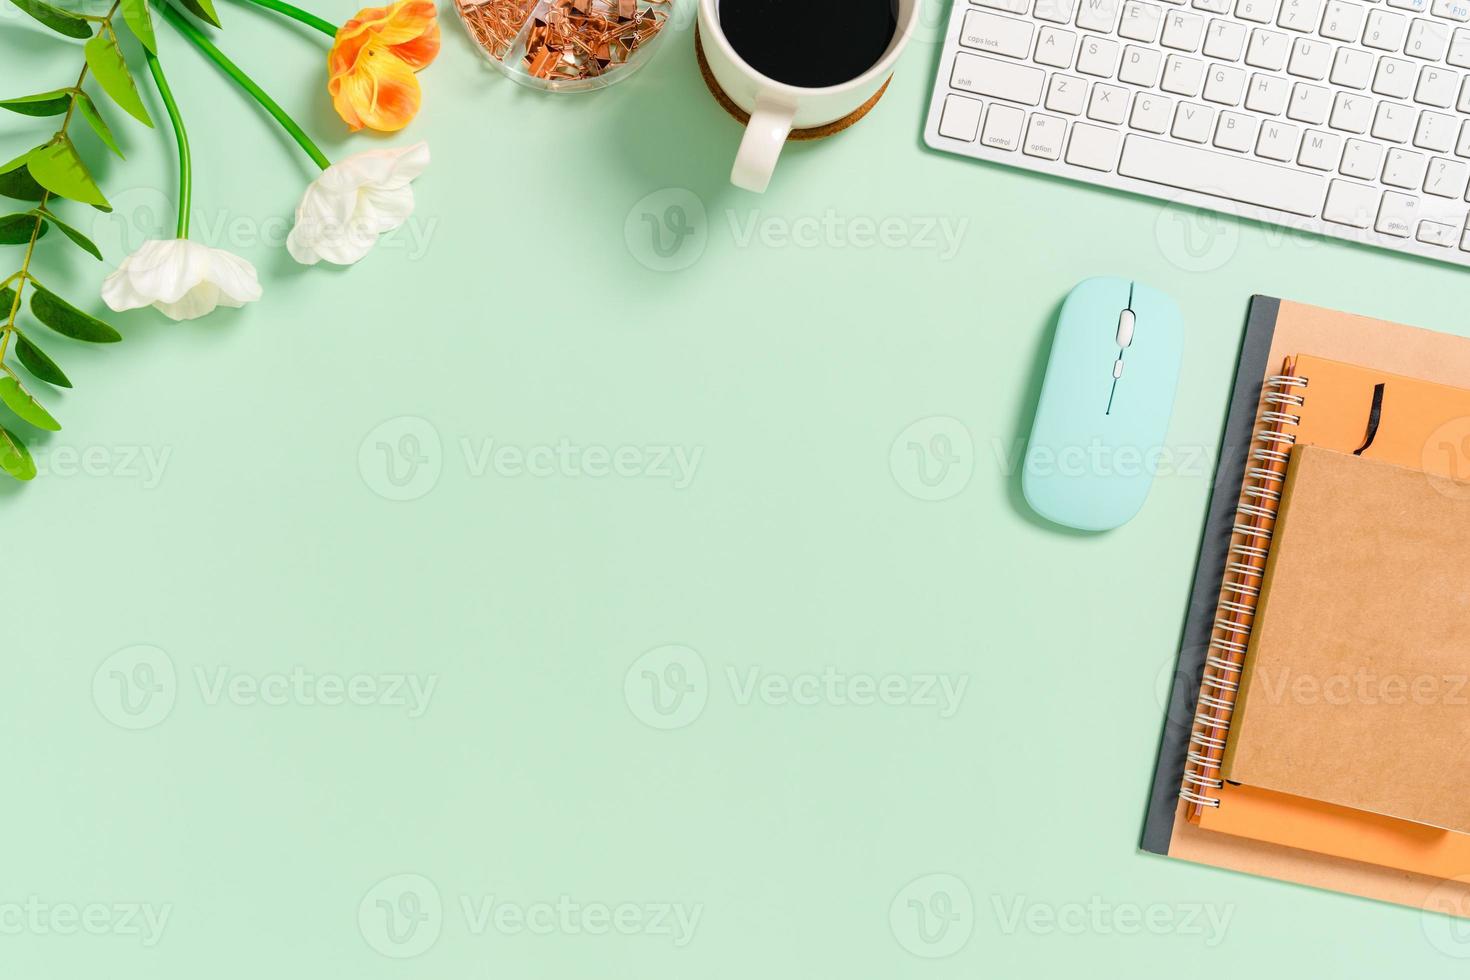 minimaler arbeitsplatz - kreatives flaches foto des arbeitsplatzes. Schreibtisch von oben mit Tastatur, Maus und Notebook auf pastellgrünem Hintergrund. Draufsicht mit Kopienraum, Flachfotografie.